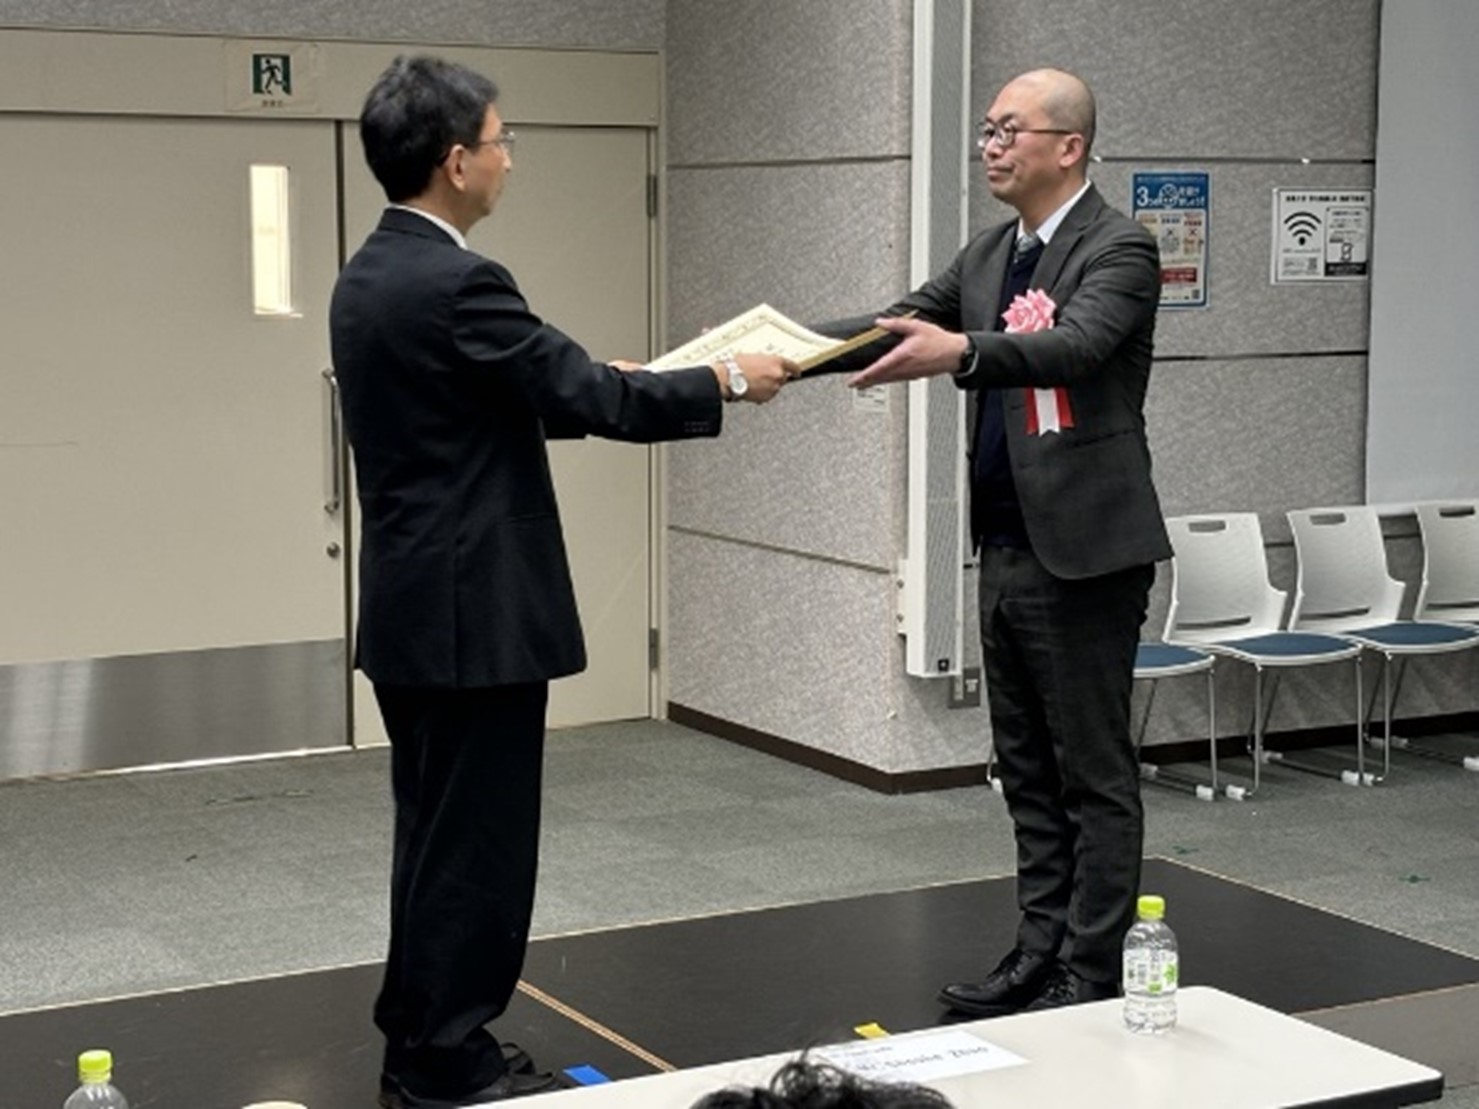 安田恵一郎電気学会長より顕彰状を授与される友野利章社会インフラ部長